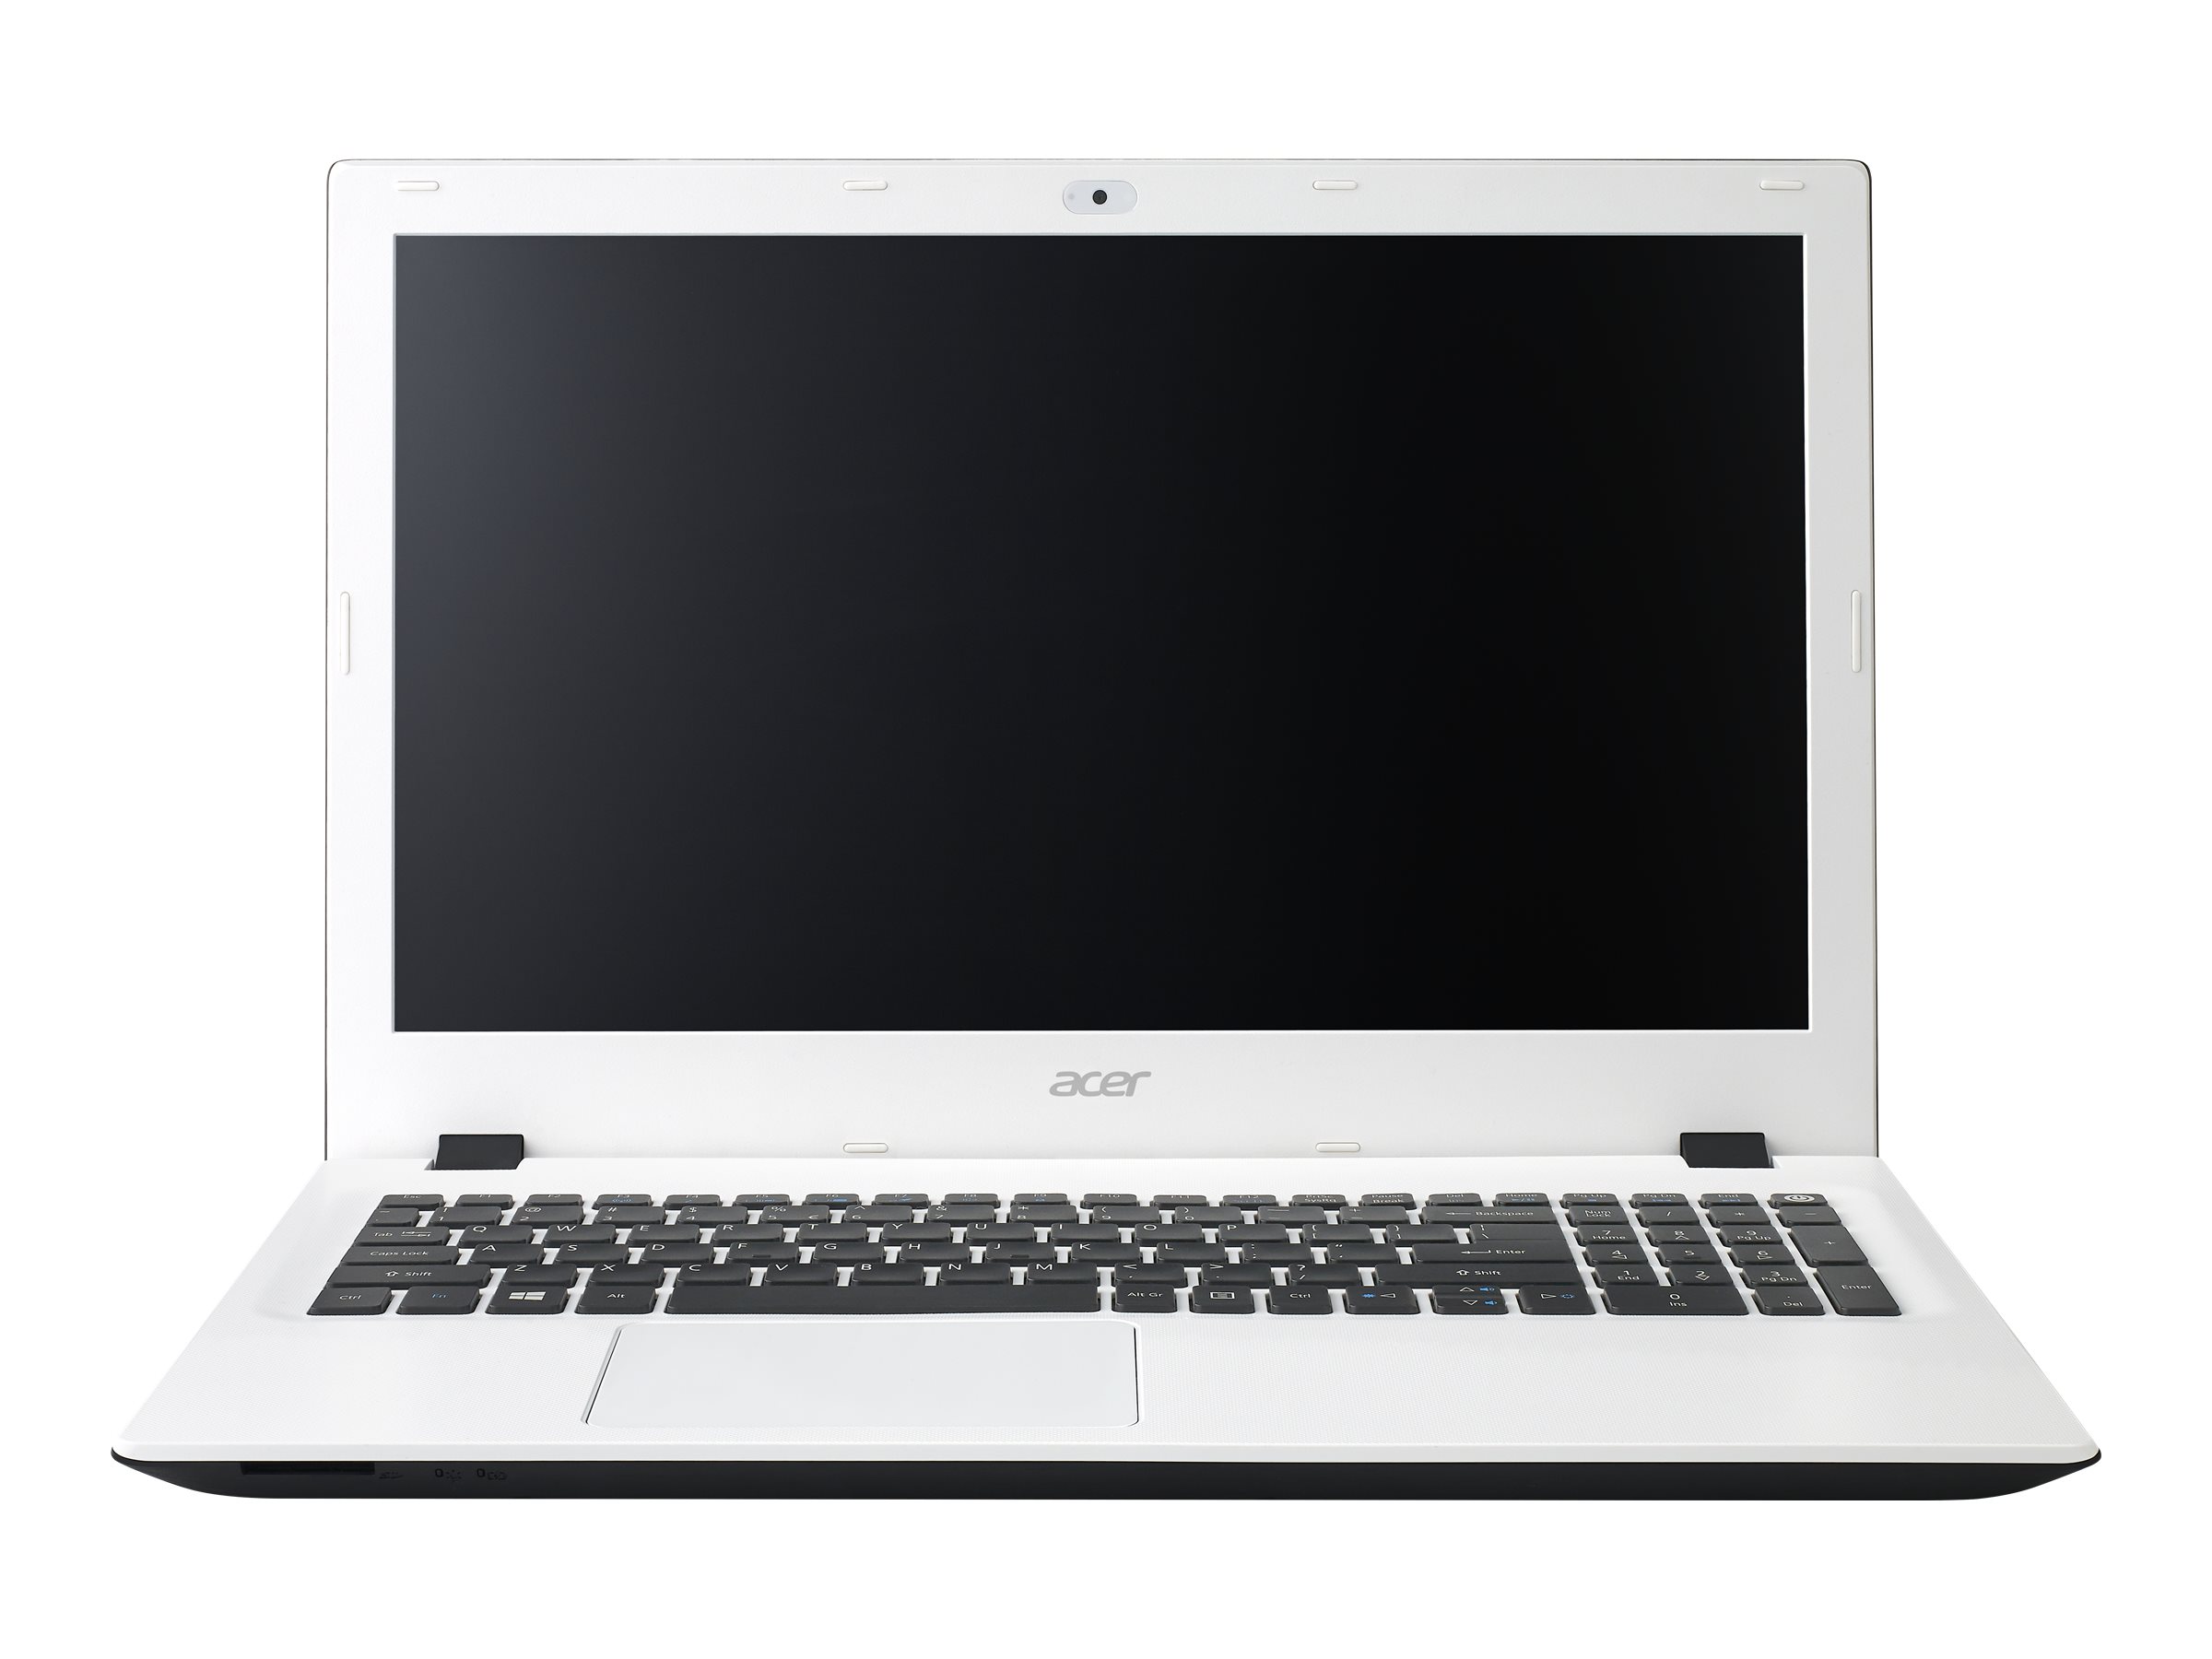 Acer Aspire E 15 (E5-573) - full specs, details and review